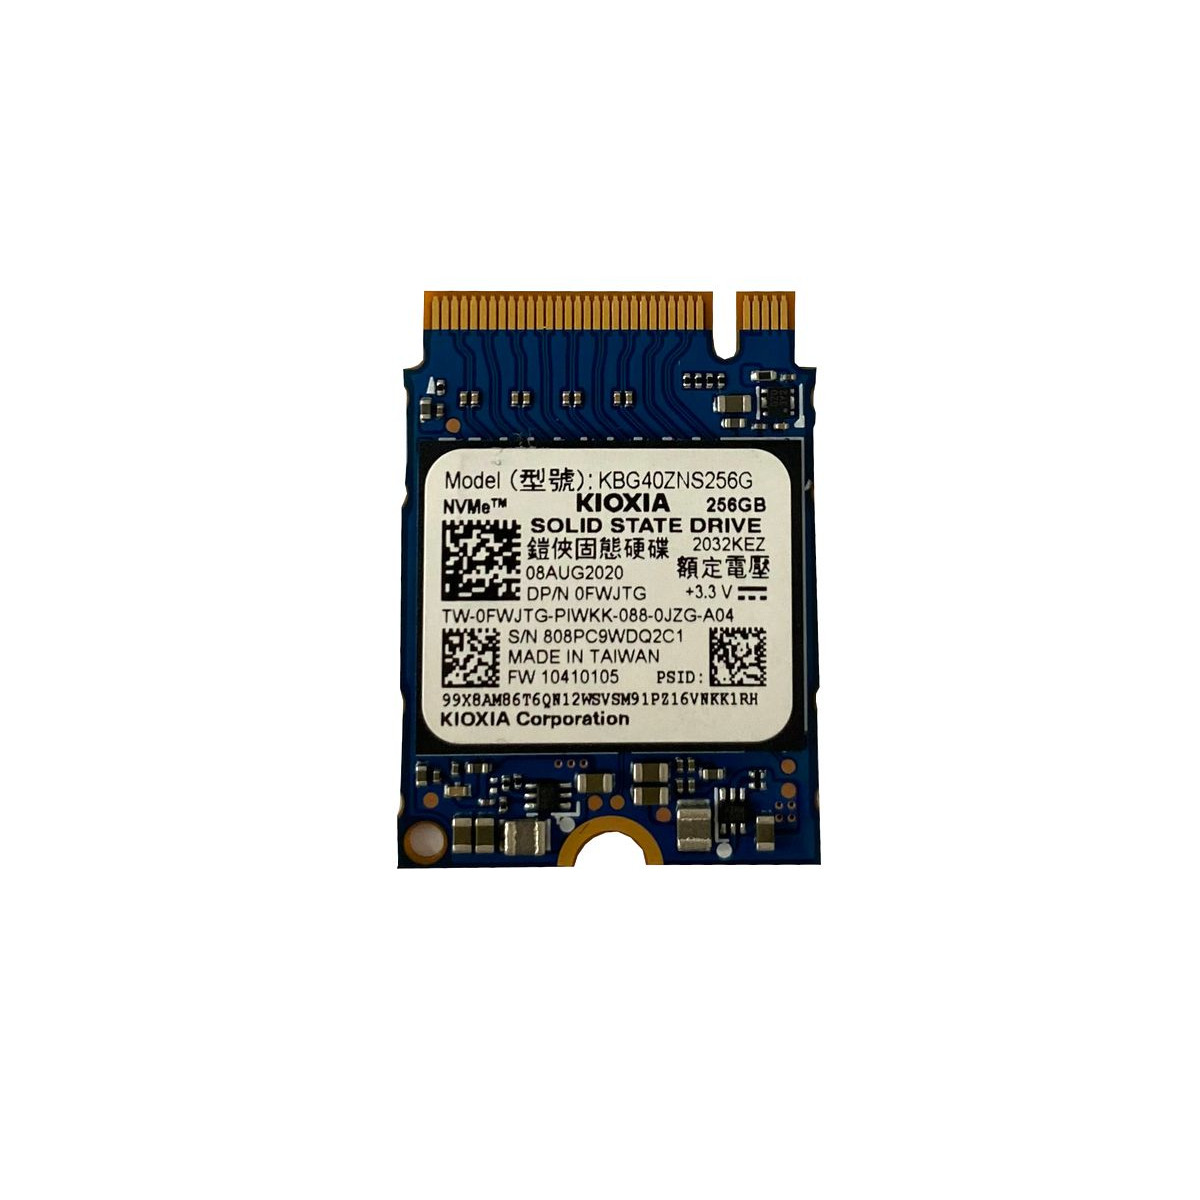 DYSK DELL KIOXIA 256GB SSD M.2 2230 NVMe 0FWJTG